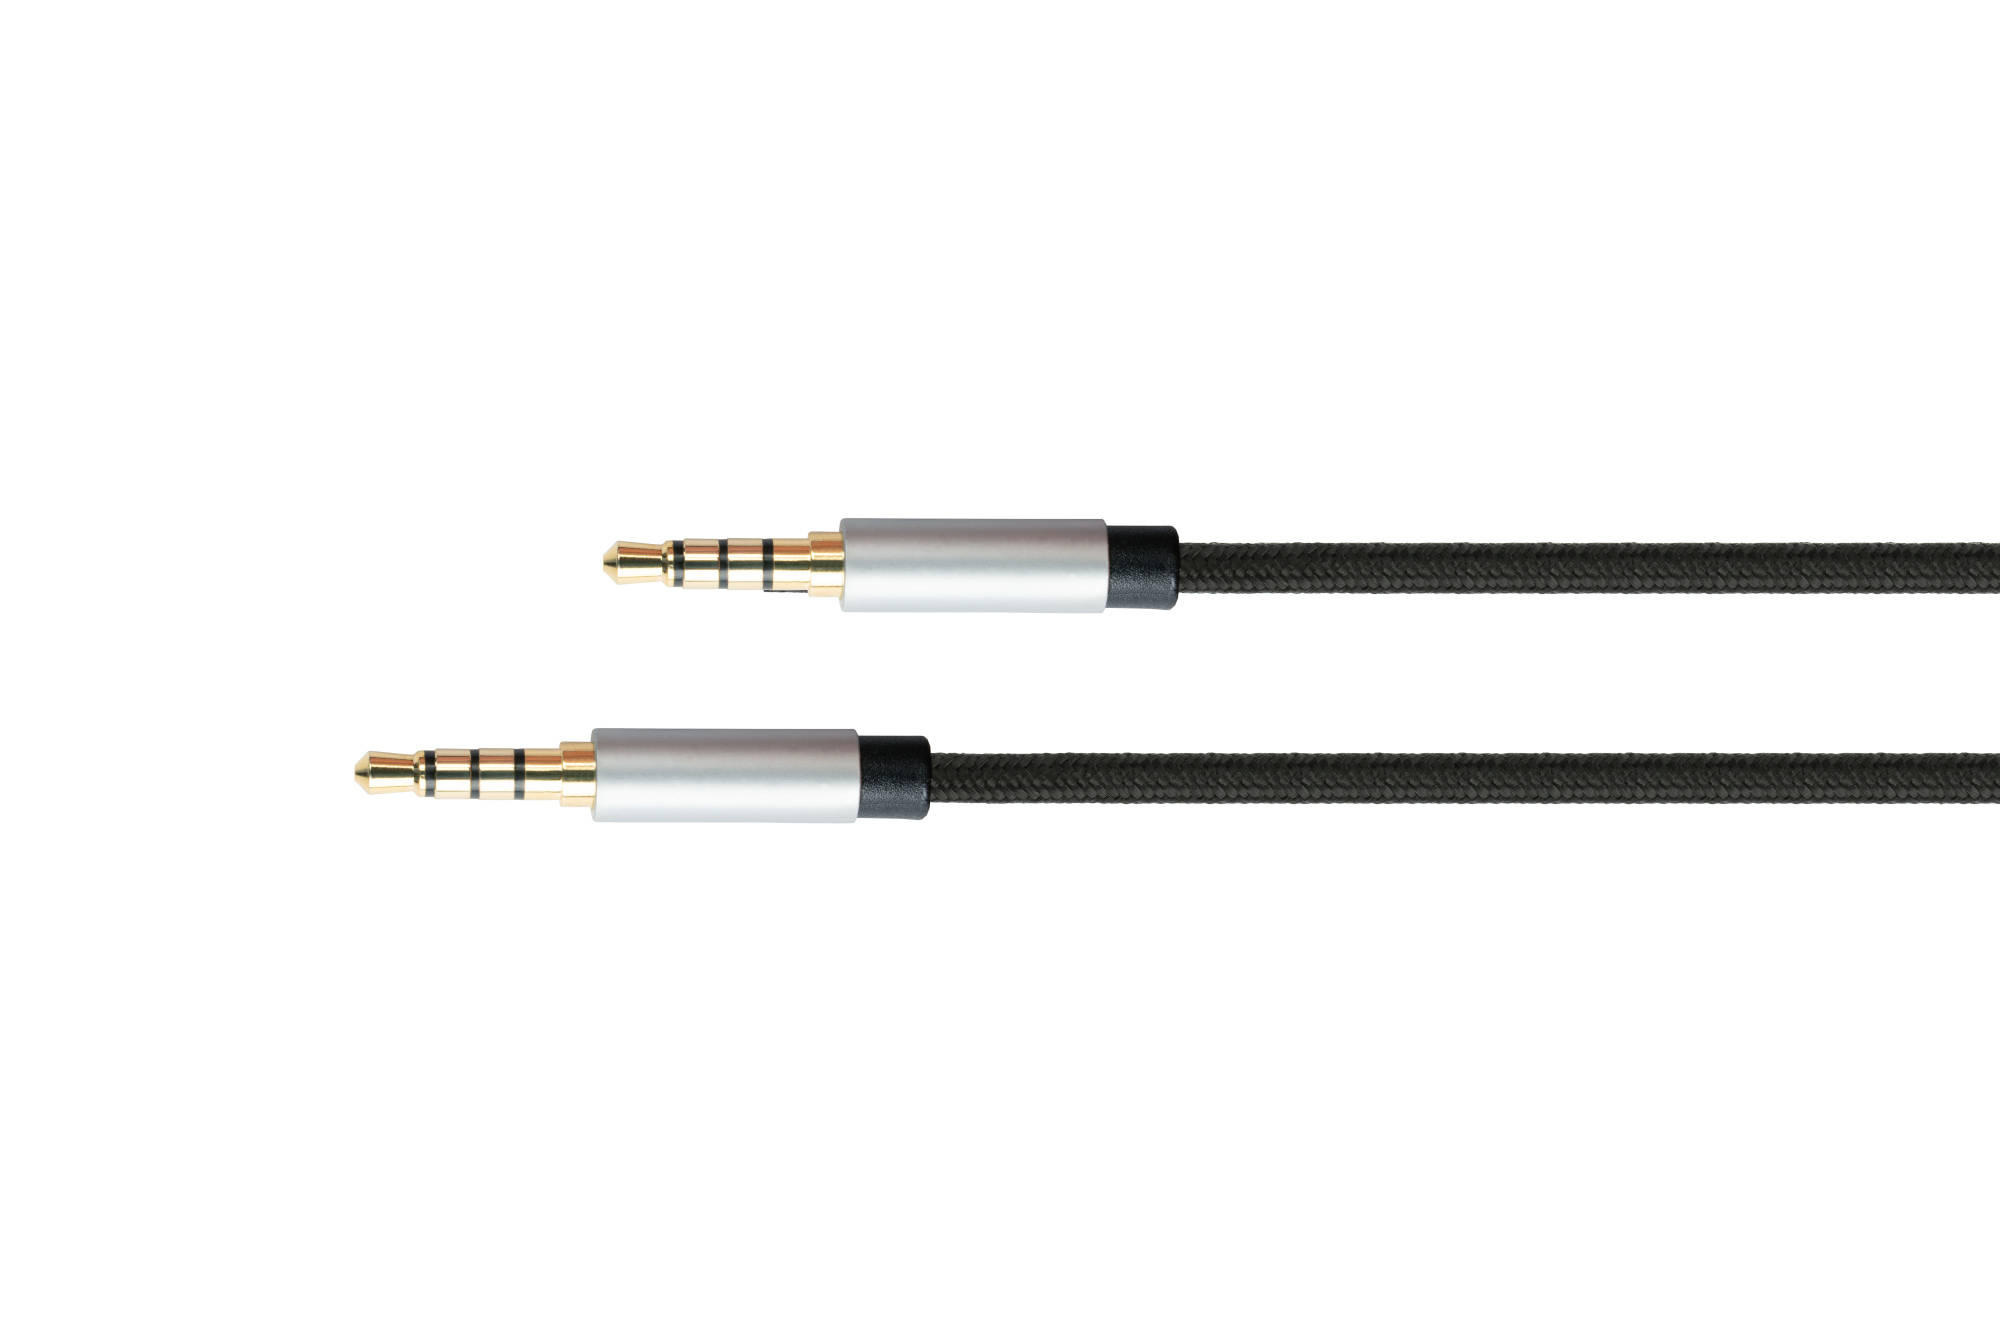 Audio Anschlusskabel High-Quality, 4-poliger 3,5mm Klinkenstecker beidseitig, Textilmantel, schwarz,